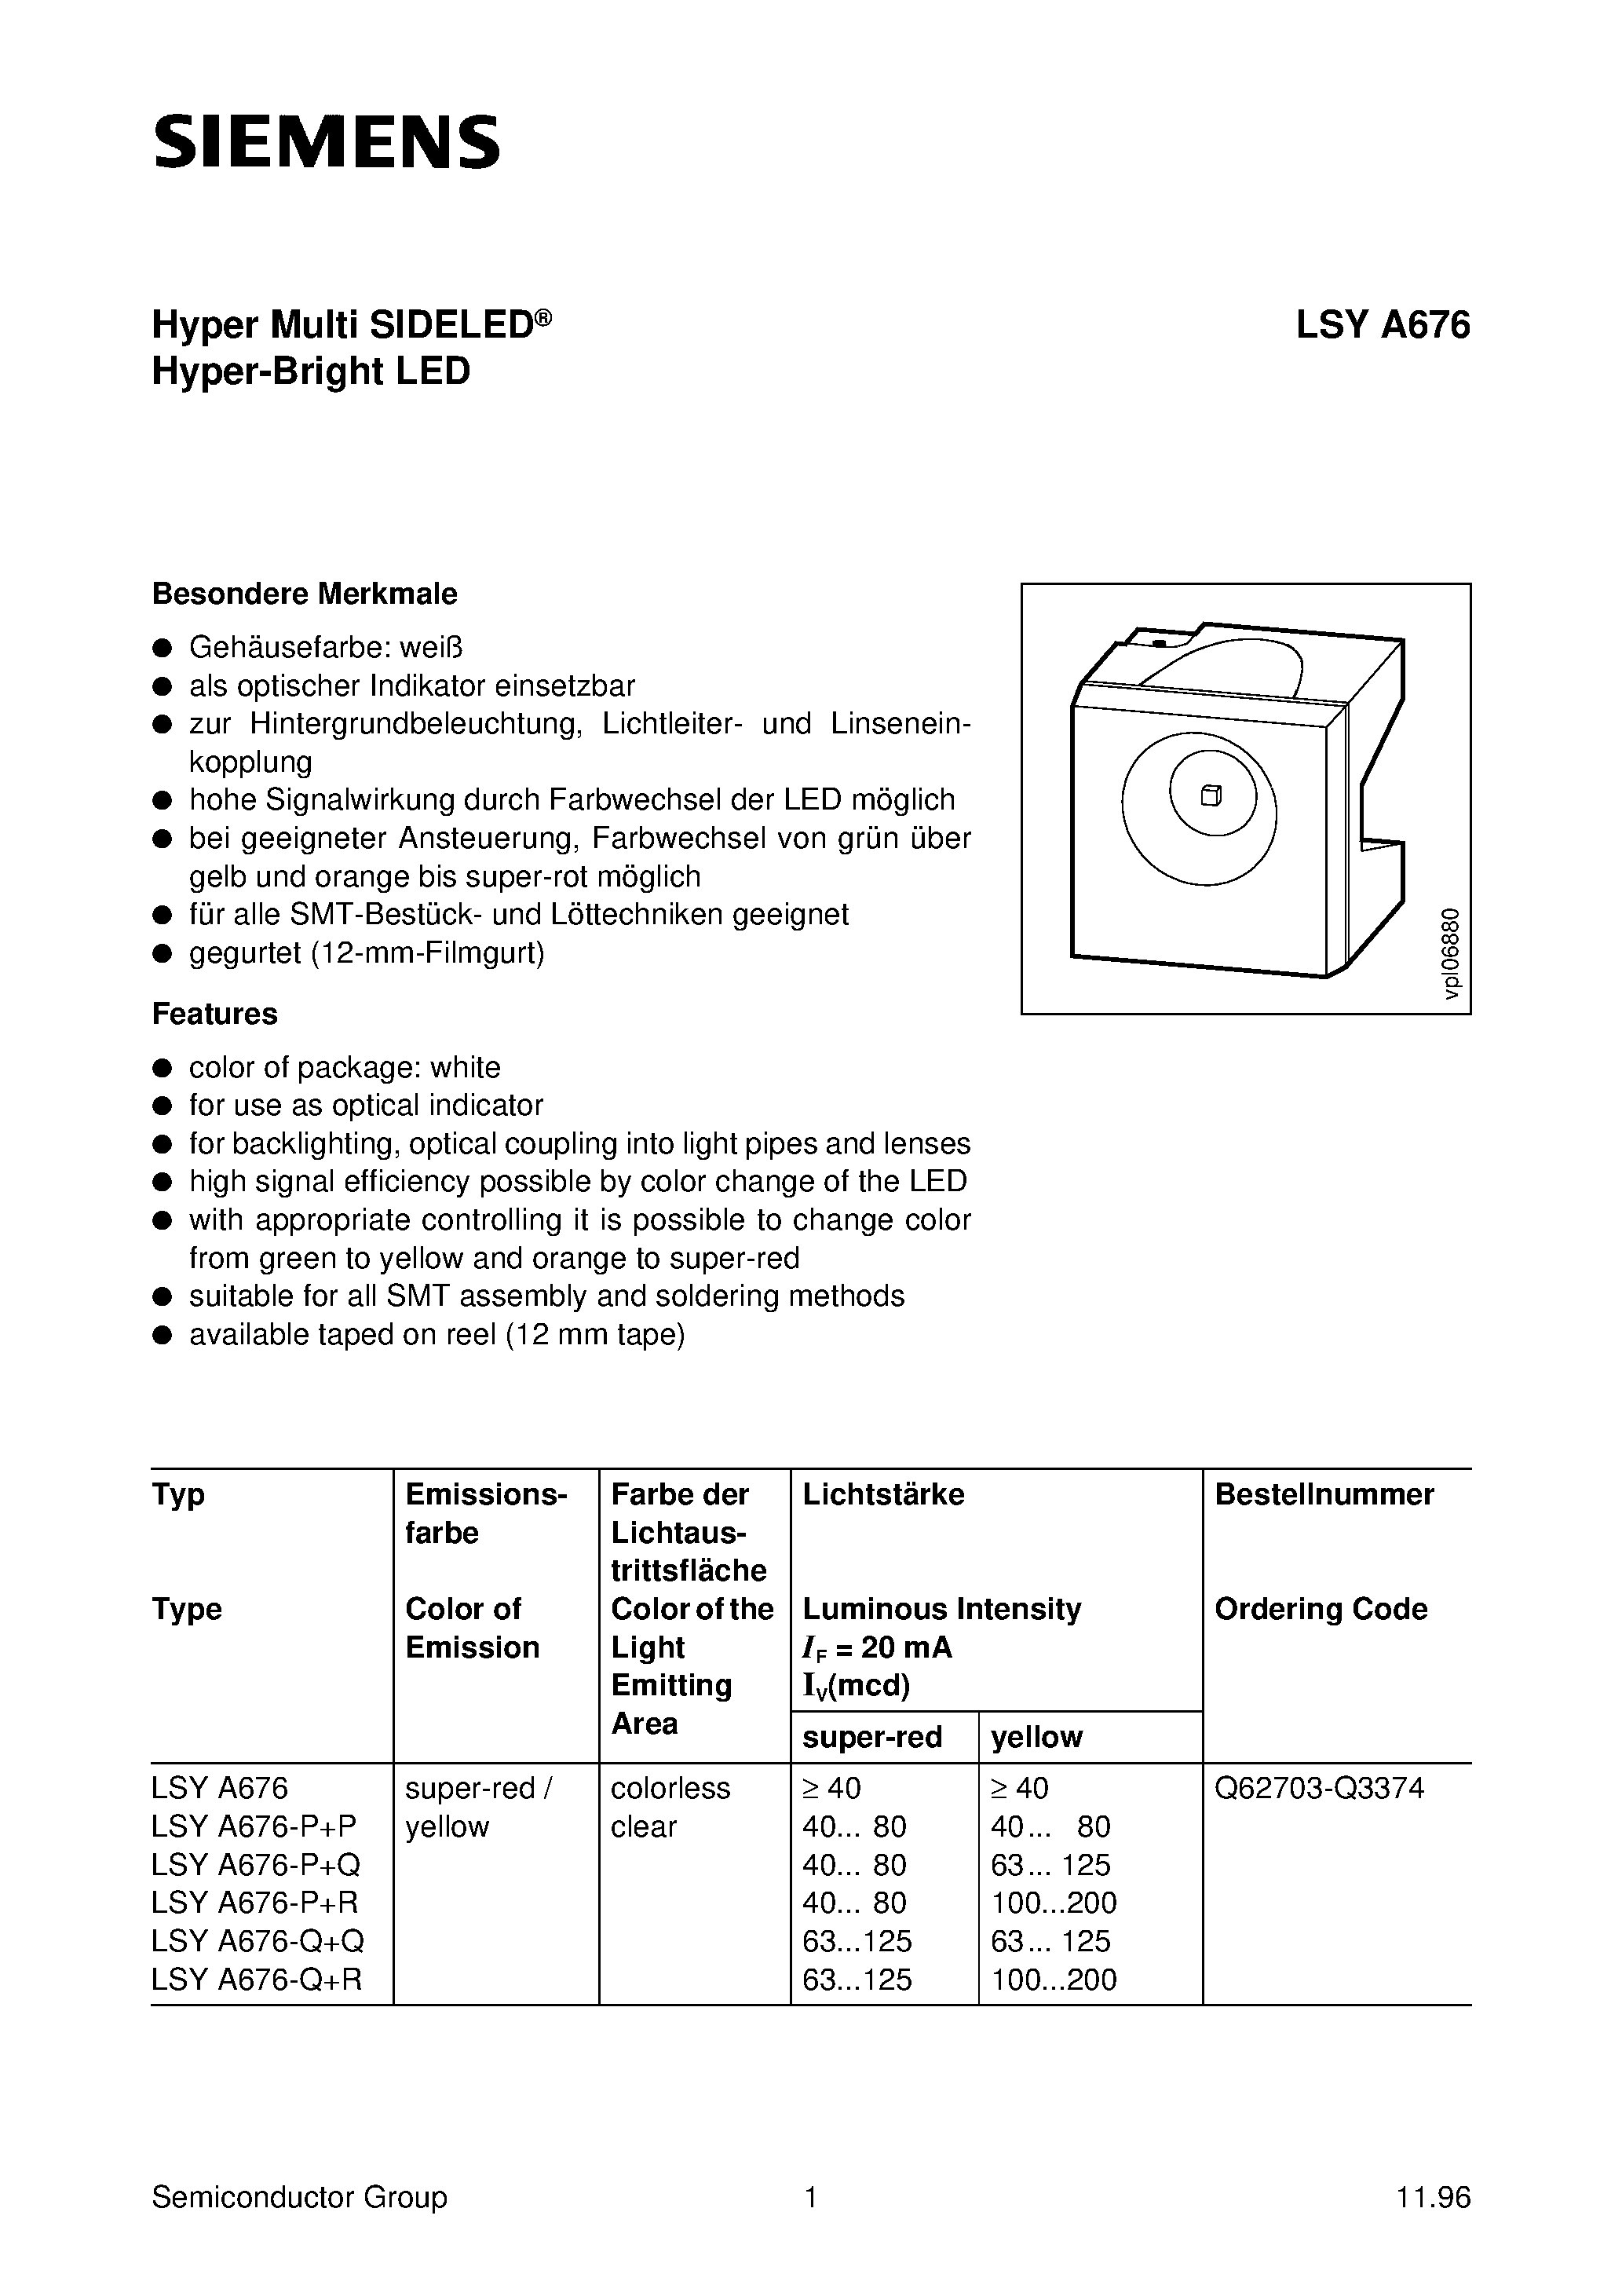 Даташит LSYA676-Q+Q-Hyper Multi SIDELED Hyper-Bright LED страница 1